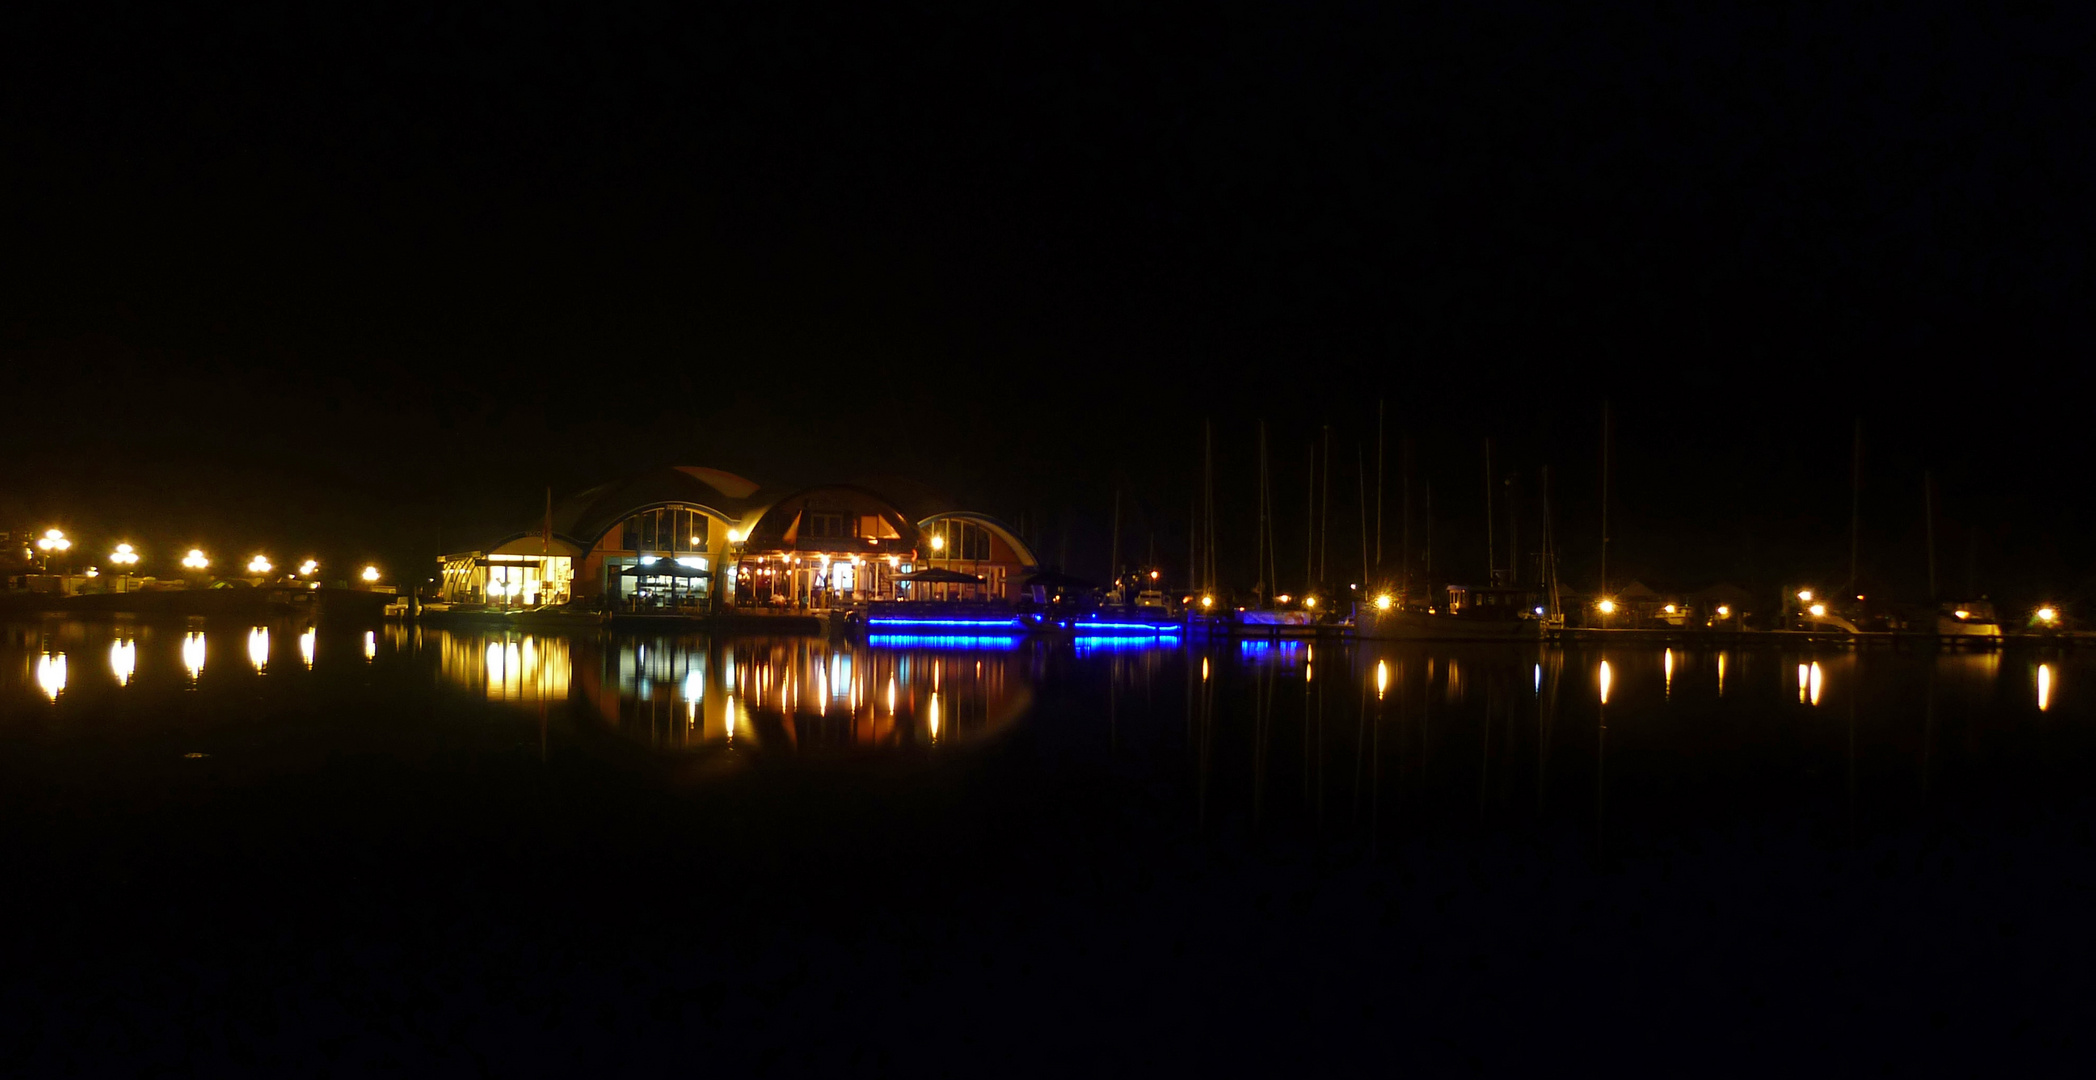 Hafen Tacozijl am Abend